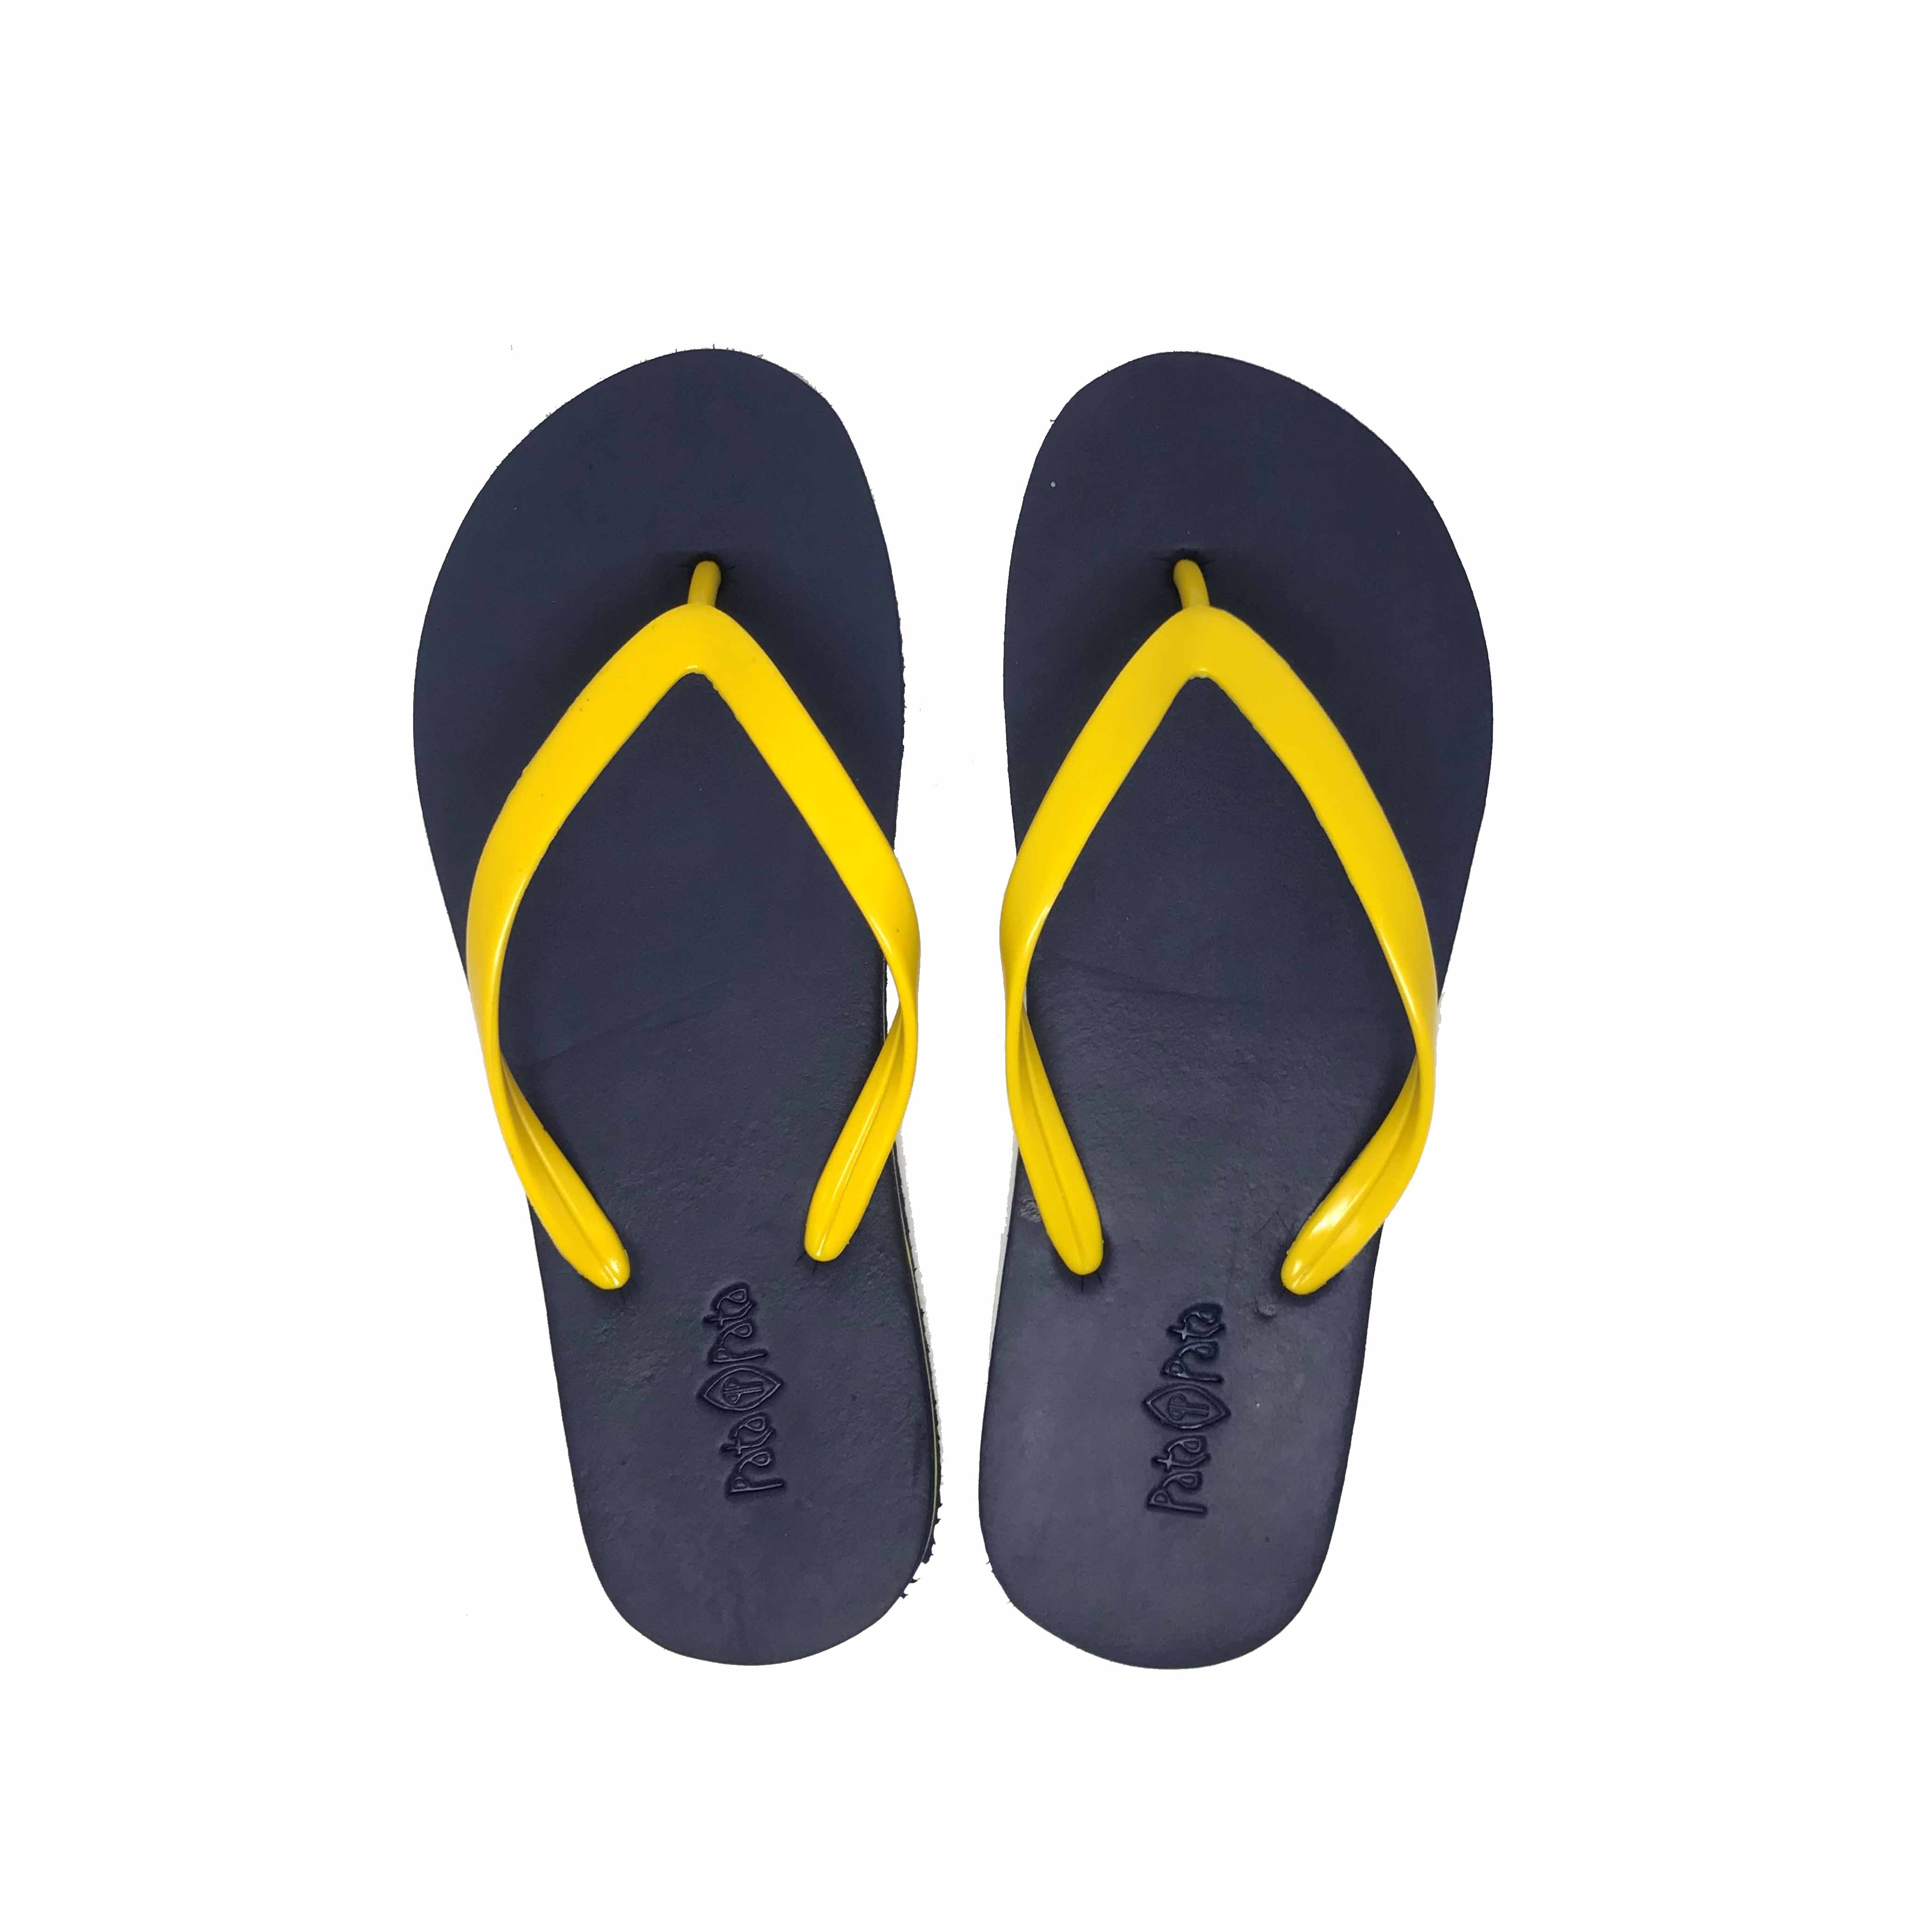 Bata Ladies Rubber two-tone Blue Yellow Flip Flop – Cole | bata.lk